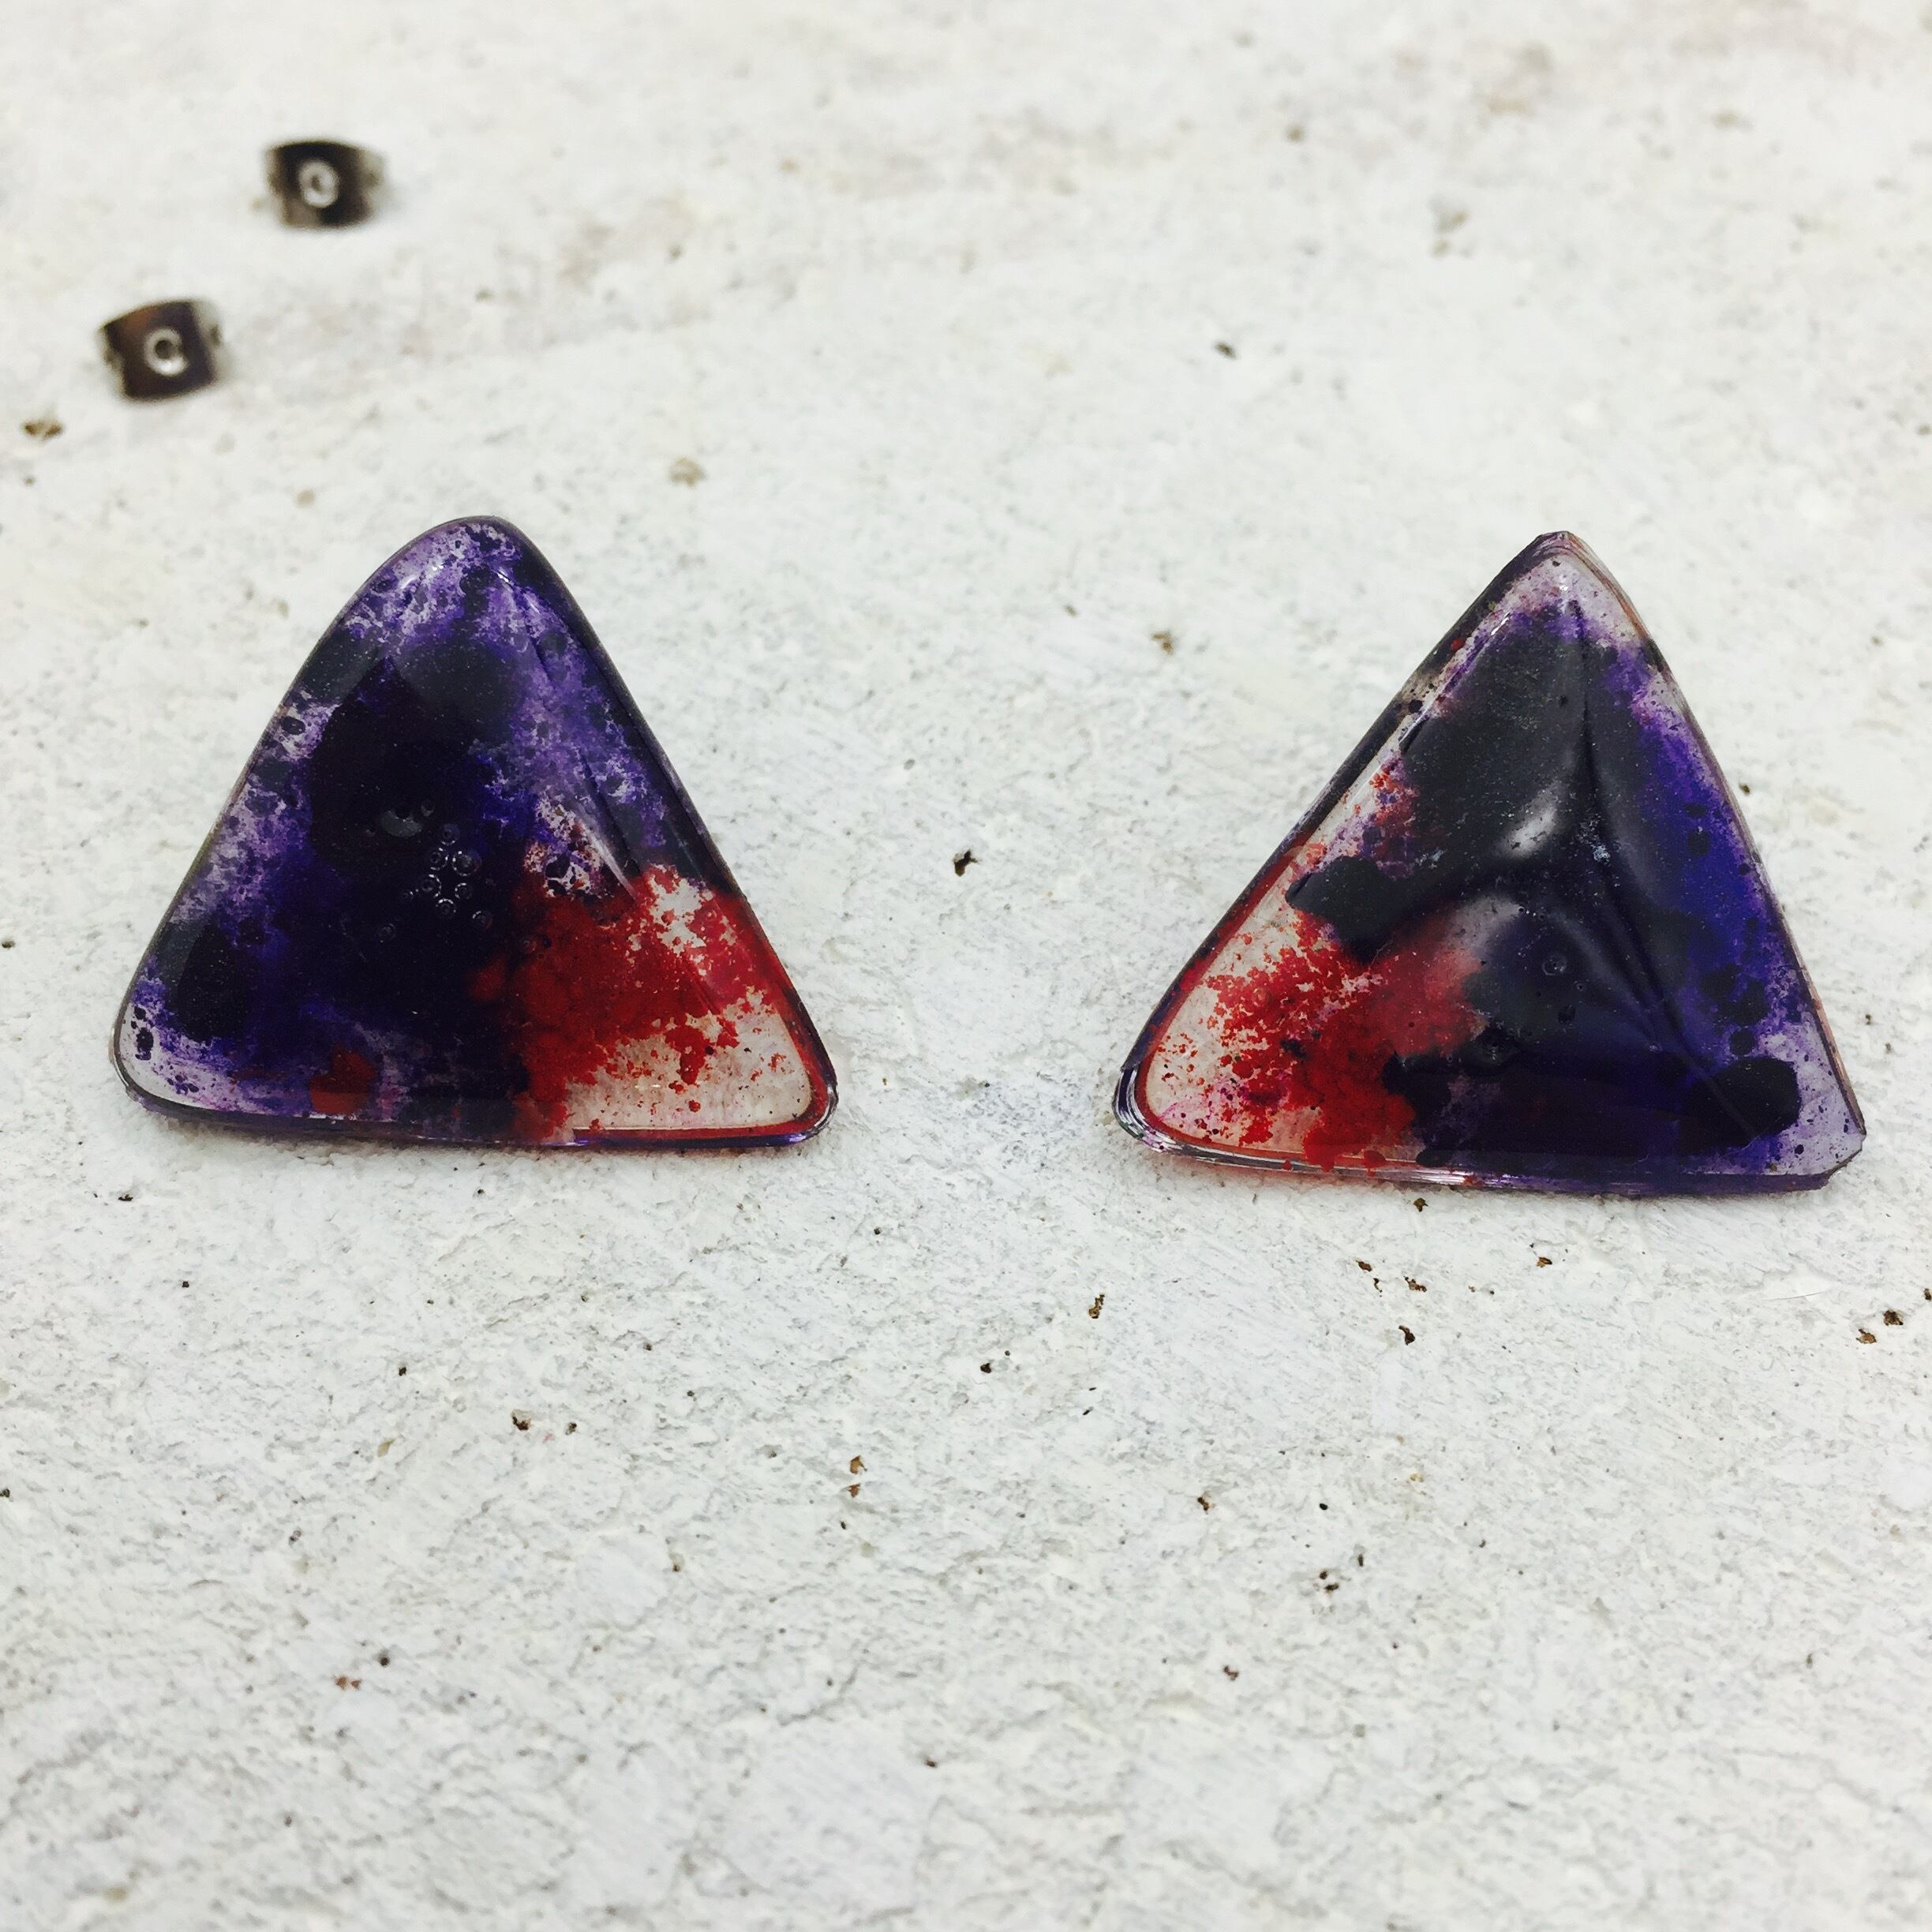 三角キャンディー : 赤紫